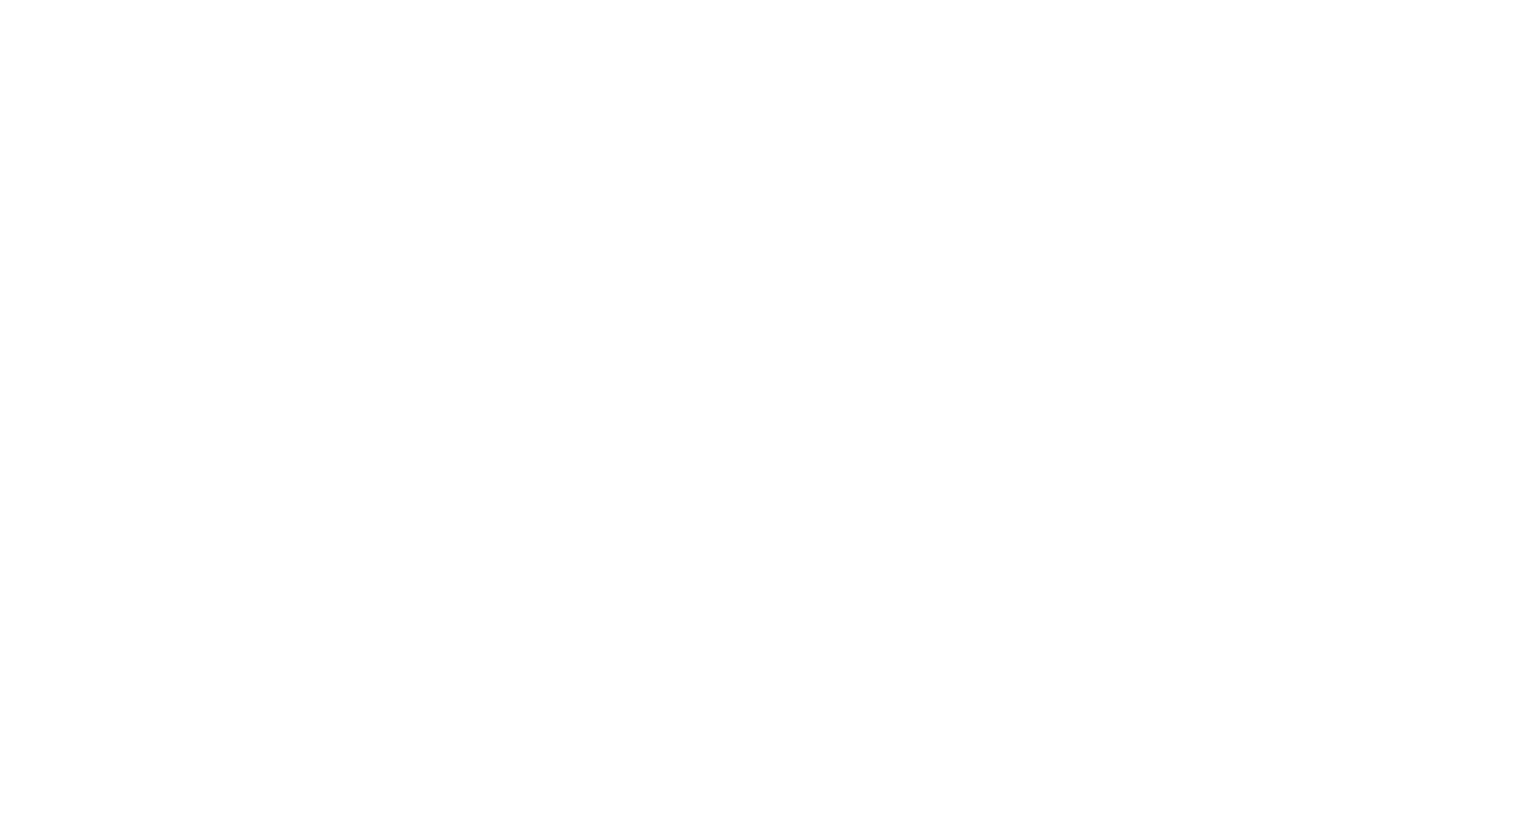 Кейс сервиса BRANDNATION - Дизайн упаковки йогуртов. Брендинговое агентство BRANDNATION в Москве и Санкт-Петербурге. Услуги: разработка логотипа и фирменного стиля, дизайн упаковки, брендбук, ребрендинг, разработка сайта.